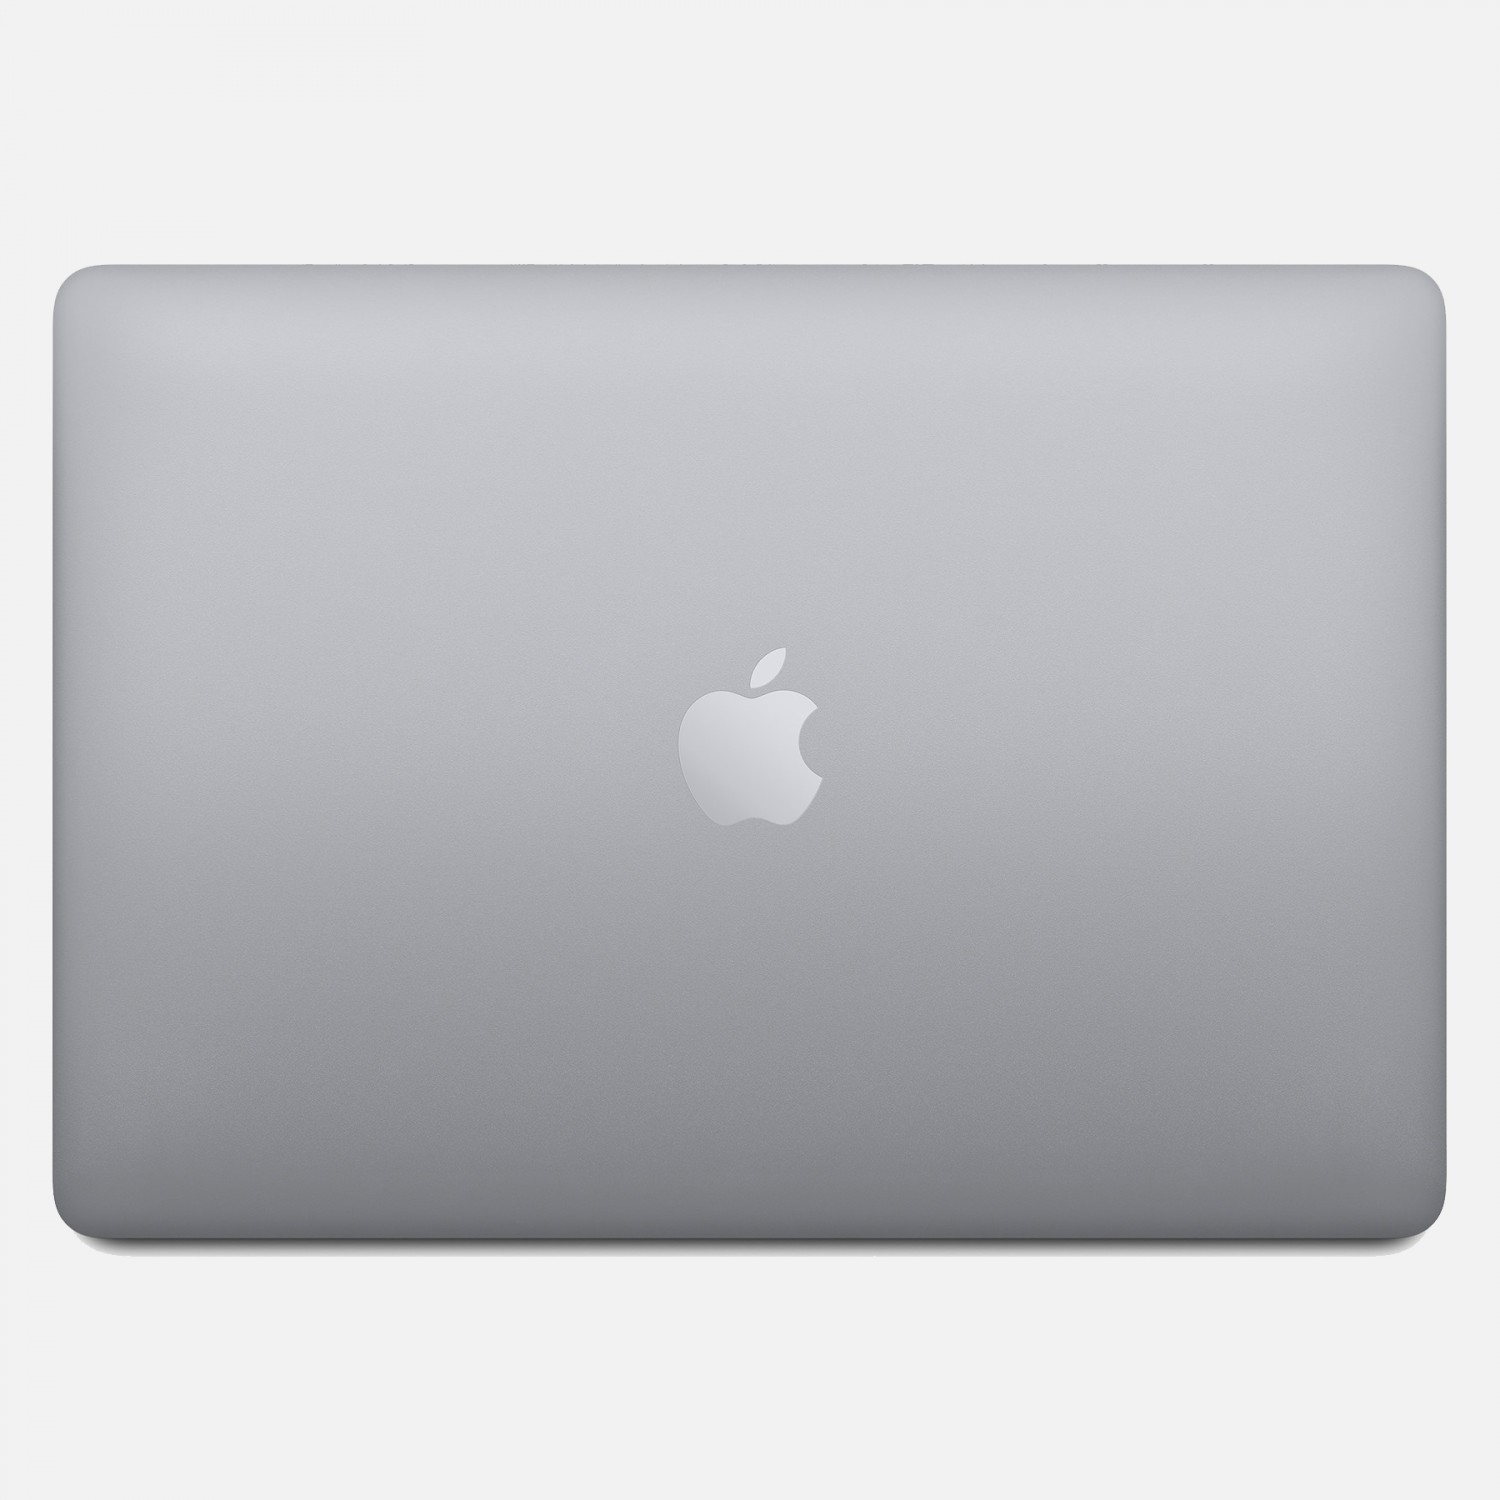 لپ تاپ Apple MacBook Pro 13 2020 CTO - Space Grey - E-5